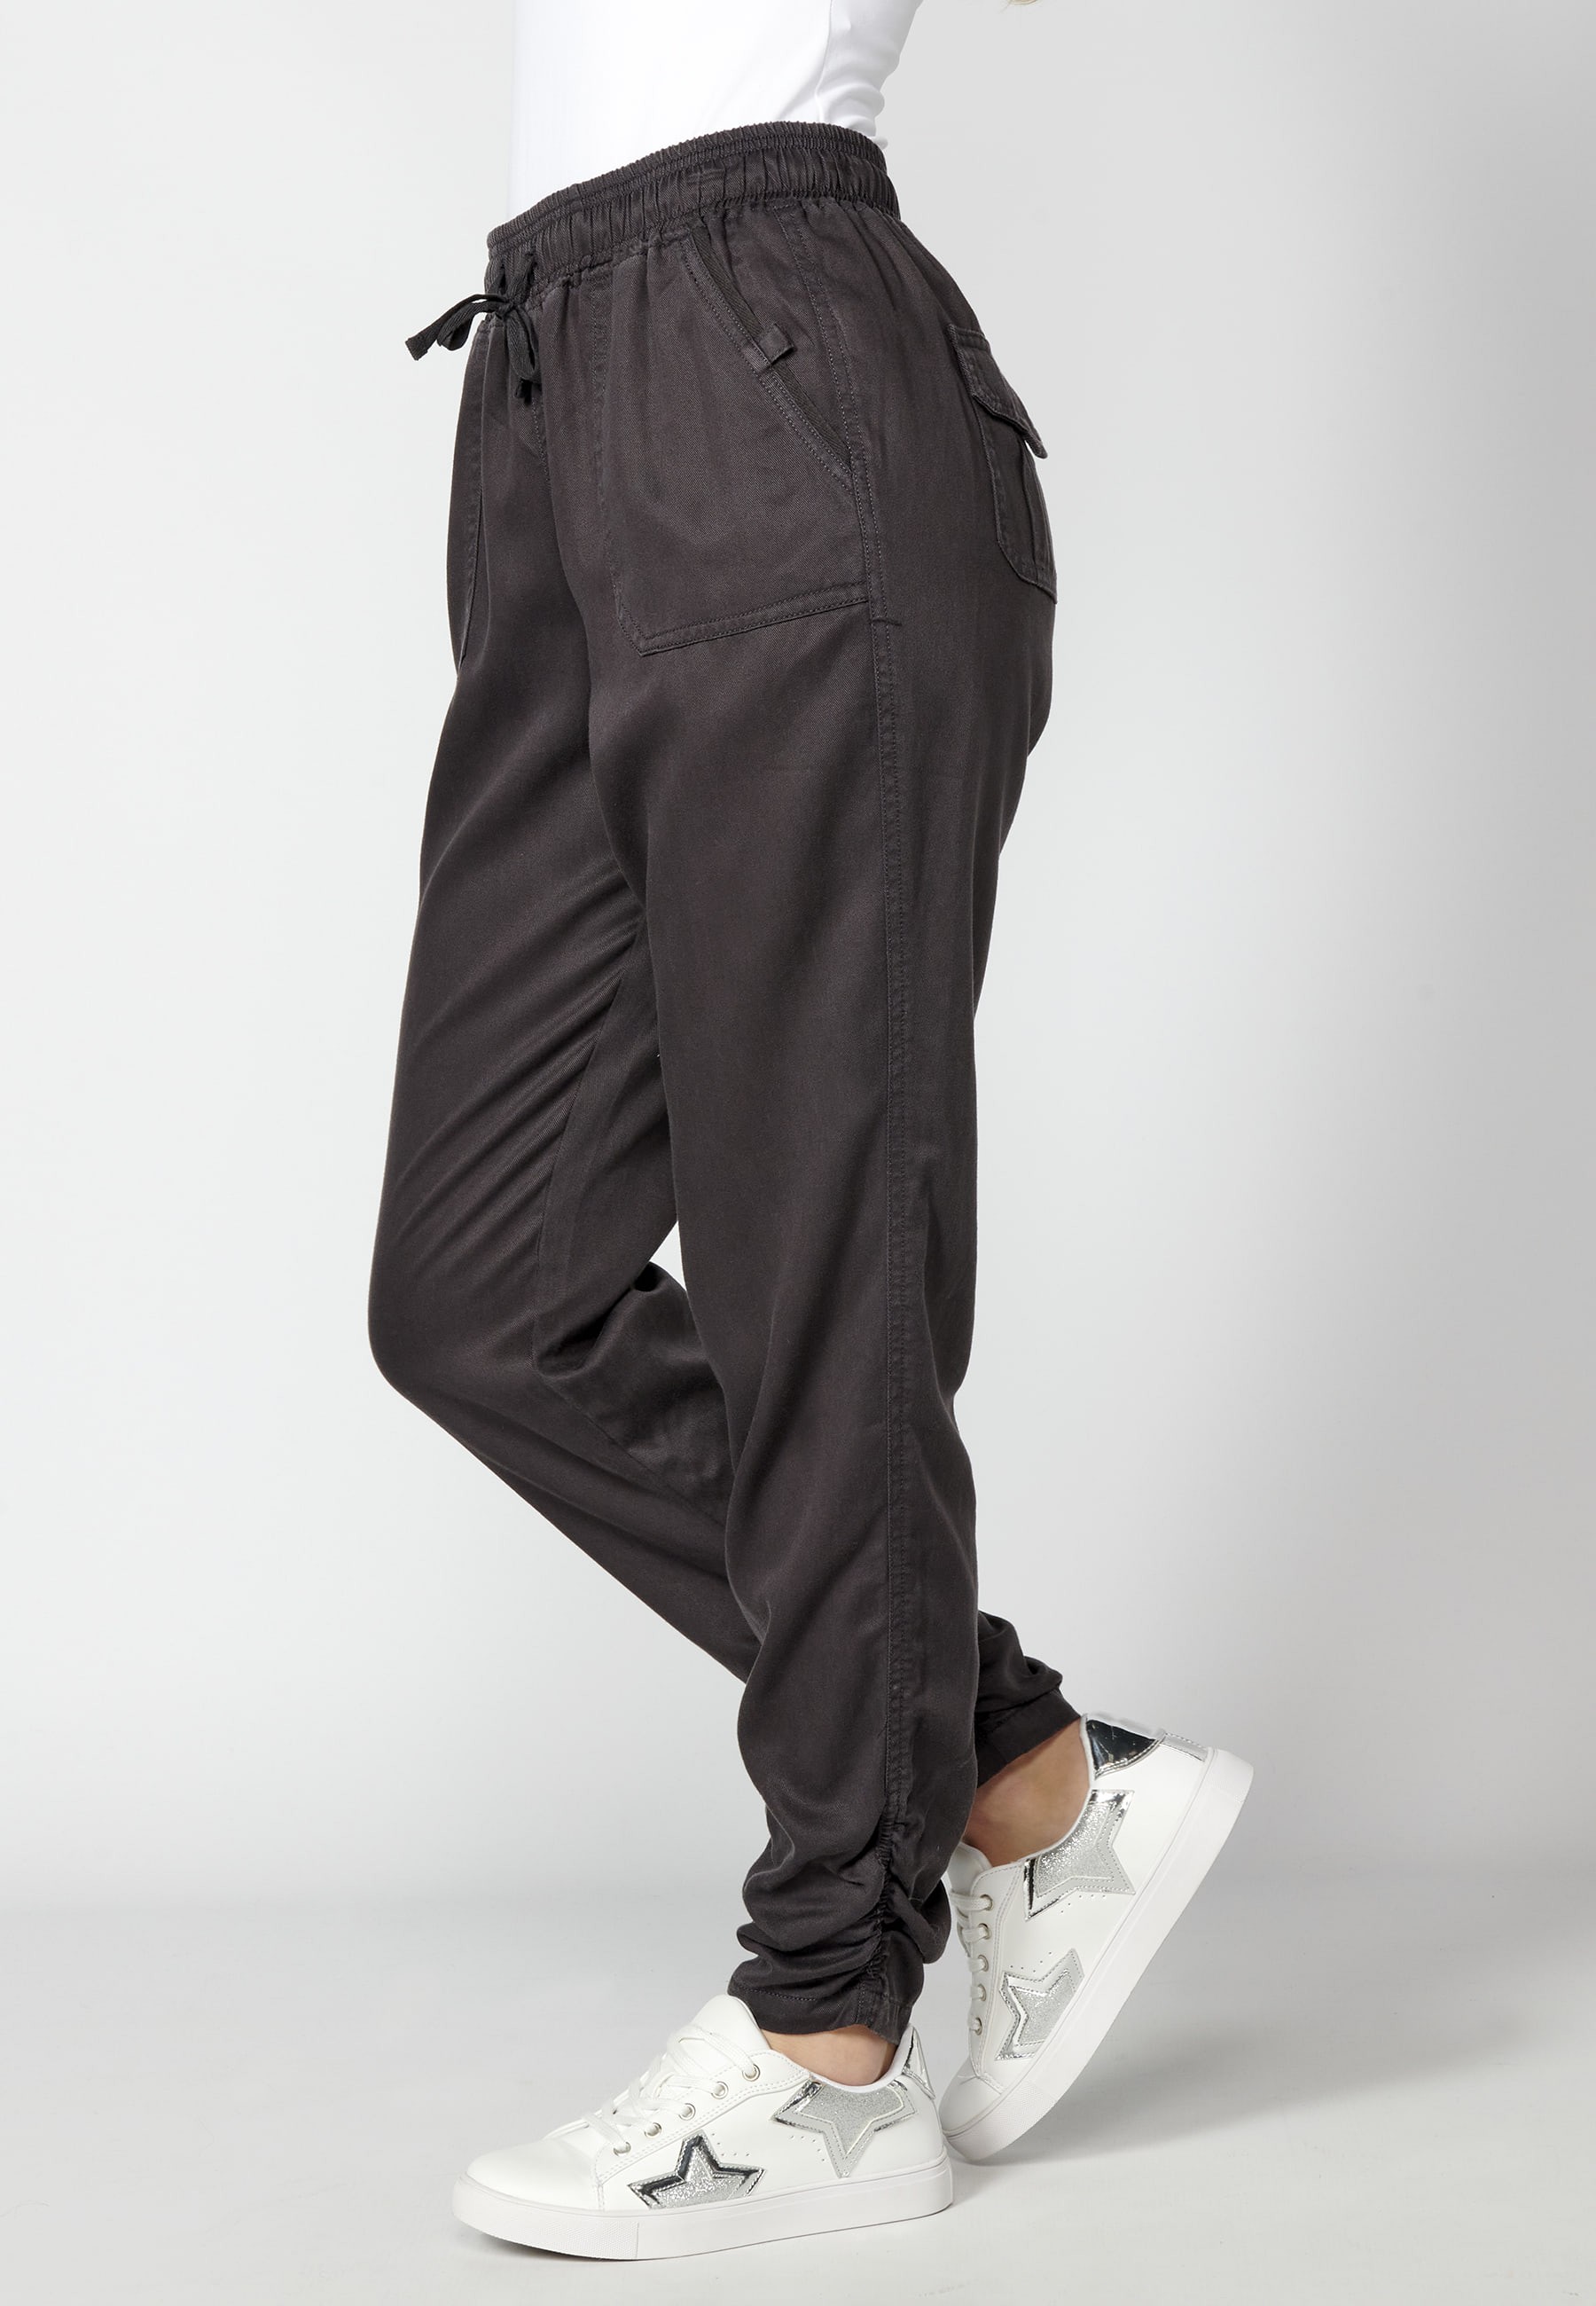 Pantalon long avec taille ajustable Couleur Noir pour Femme